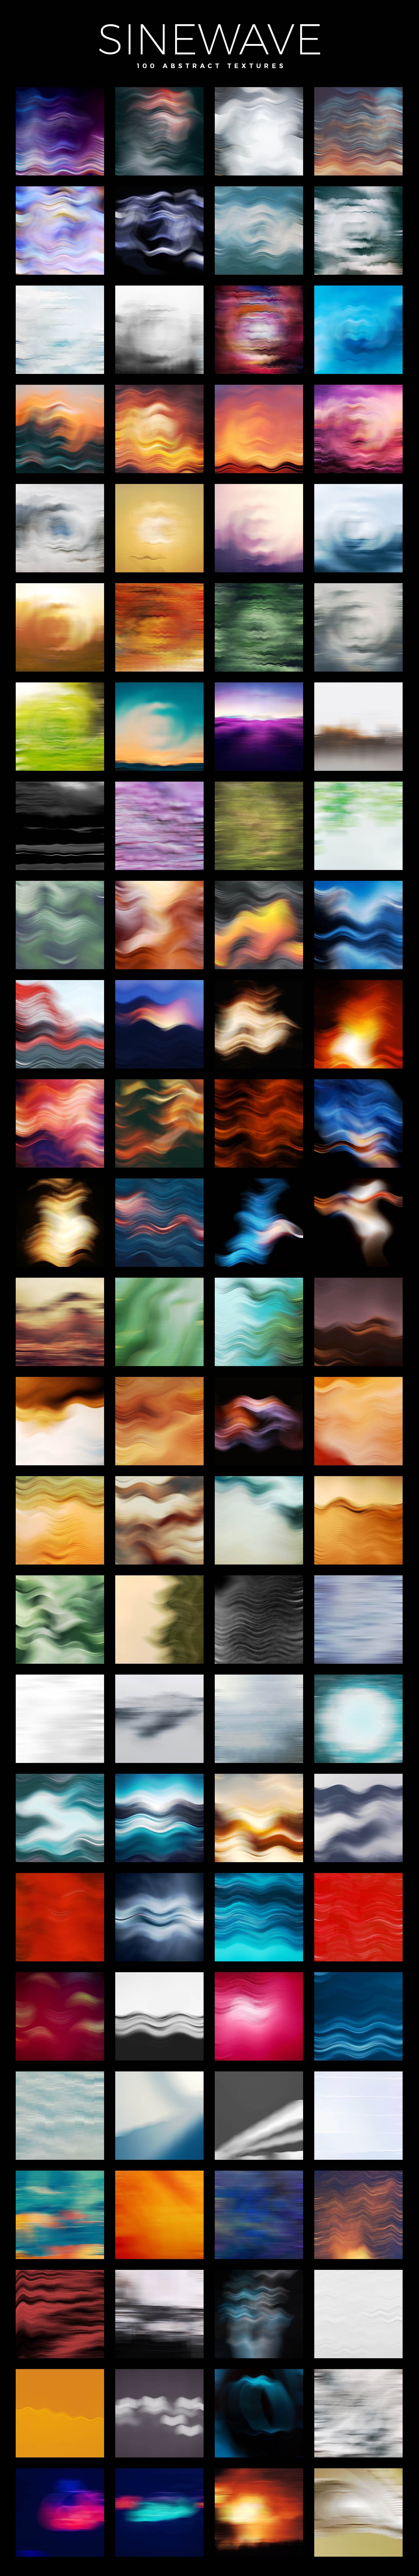 100款炫彩艺术抽象流体渐变扭曲波浪装饰背景底纹图片设计素材 Sinewave – 100 Abstract Textures